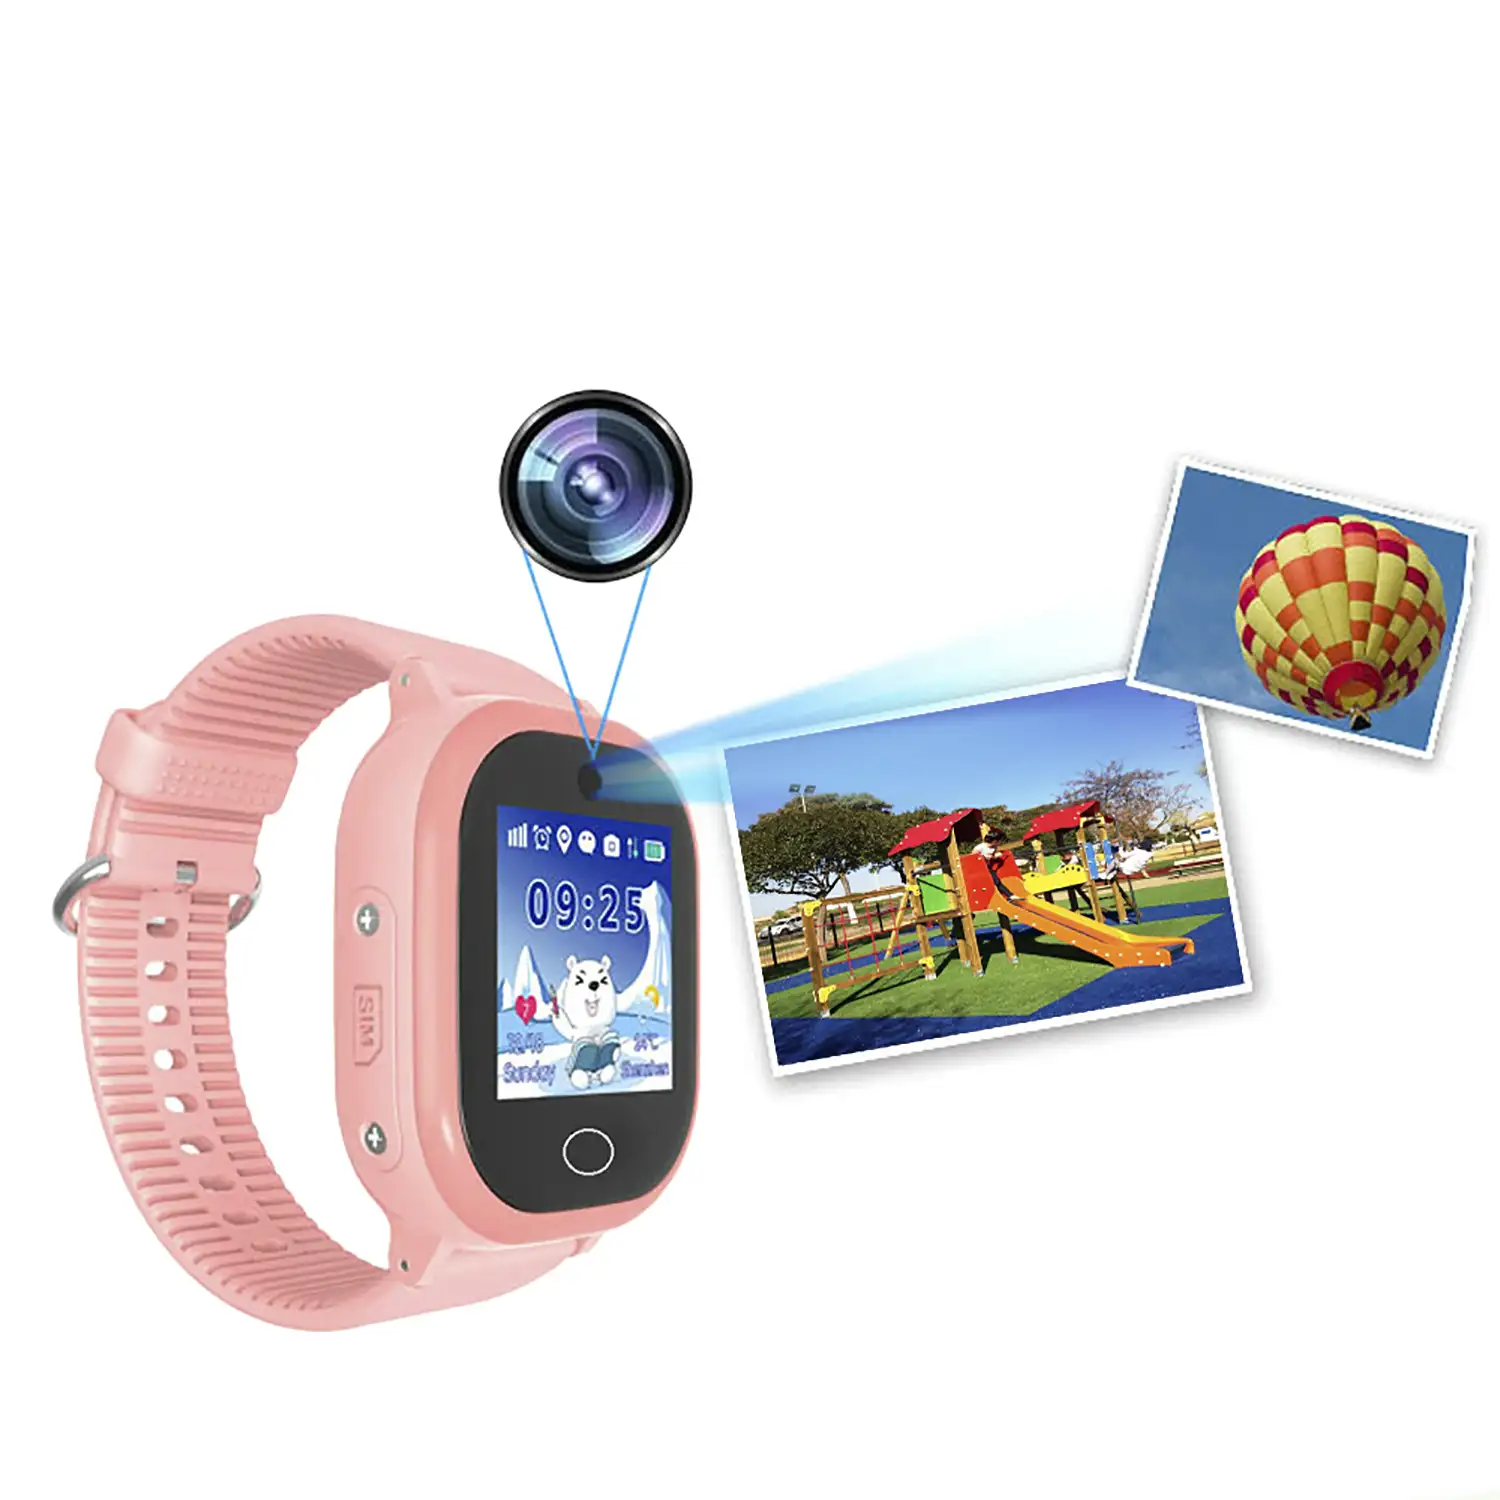 Smartwatch GPS especial para niños, con función de rastreo, llamadas SOS y recepción de llamada